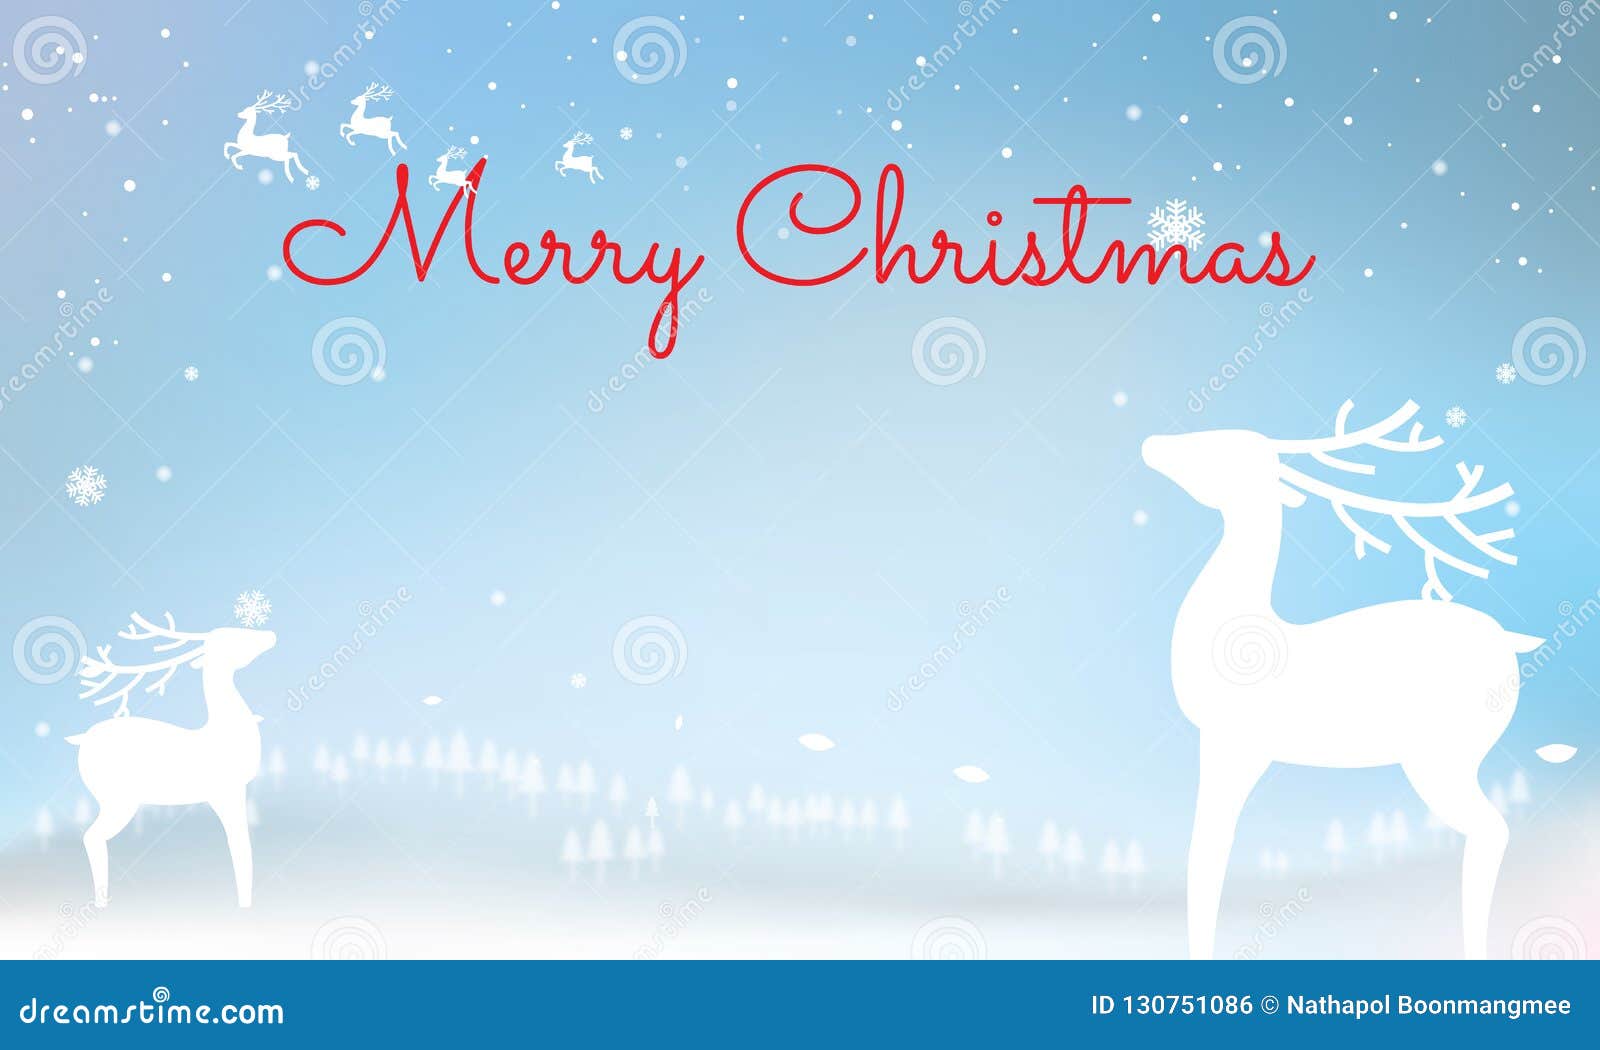 圣诞节印刷在与冬天lan的发光的xmas背景向量例证 插画包括有圣诞节印刷在与冬天lan的发光的xmas背景